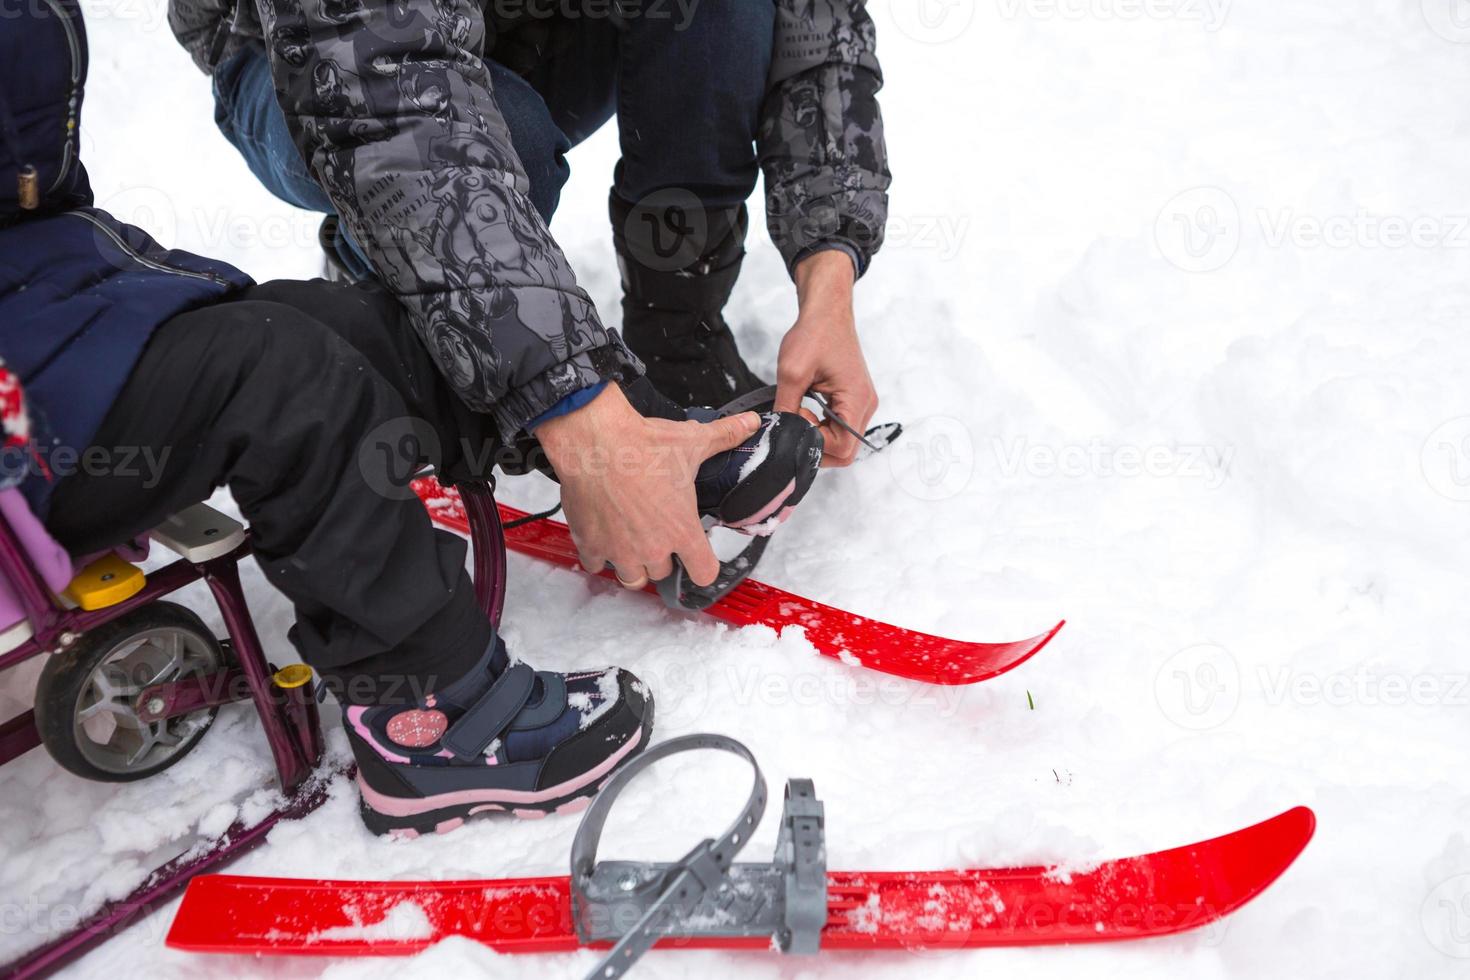 pai ajuda sua filhinha a calçar esquis de plástico infantis. treinamento esportivo, esqui, apoio e assistência. esportes ativos de inverno ao ar livre desde a infância foto